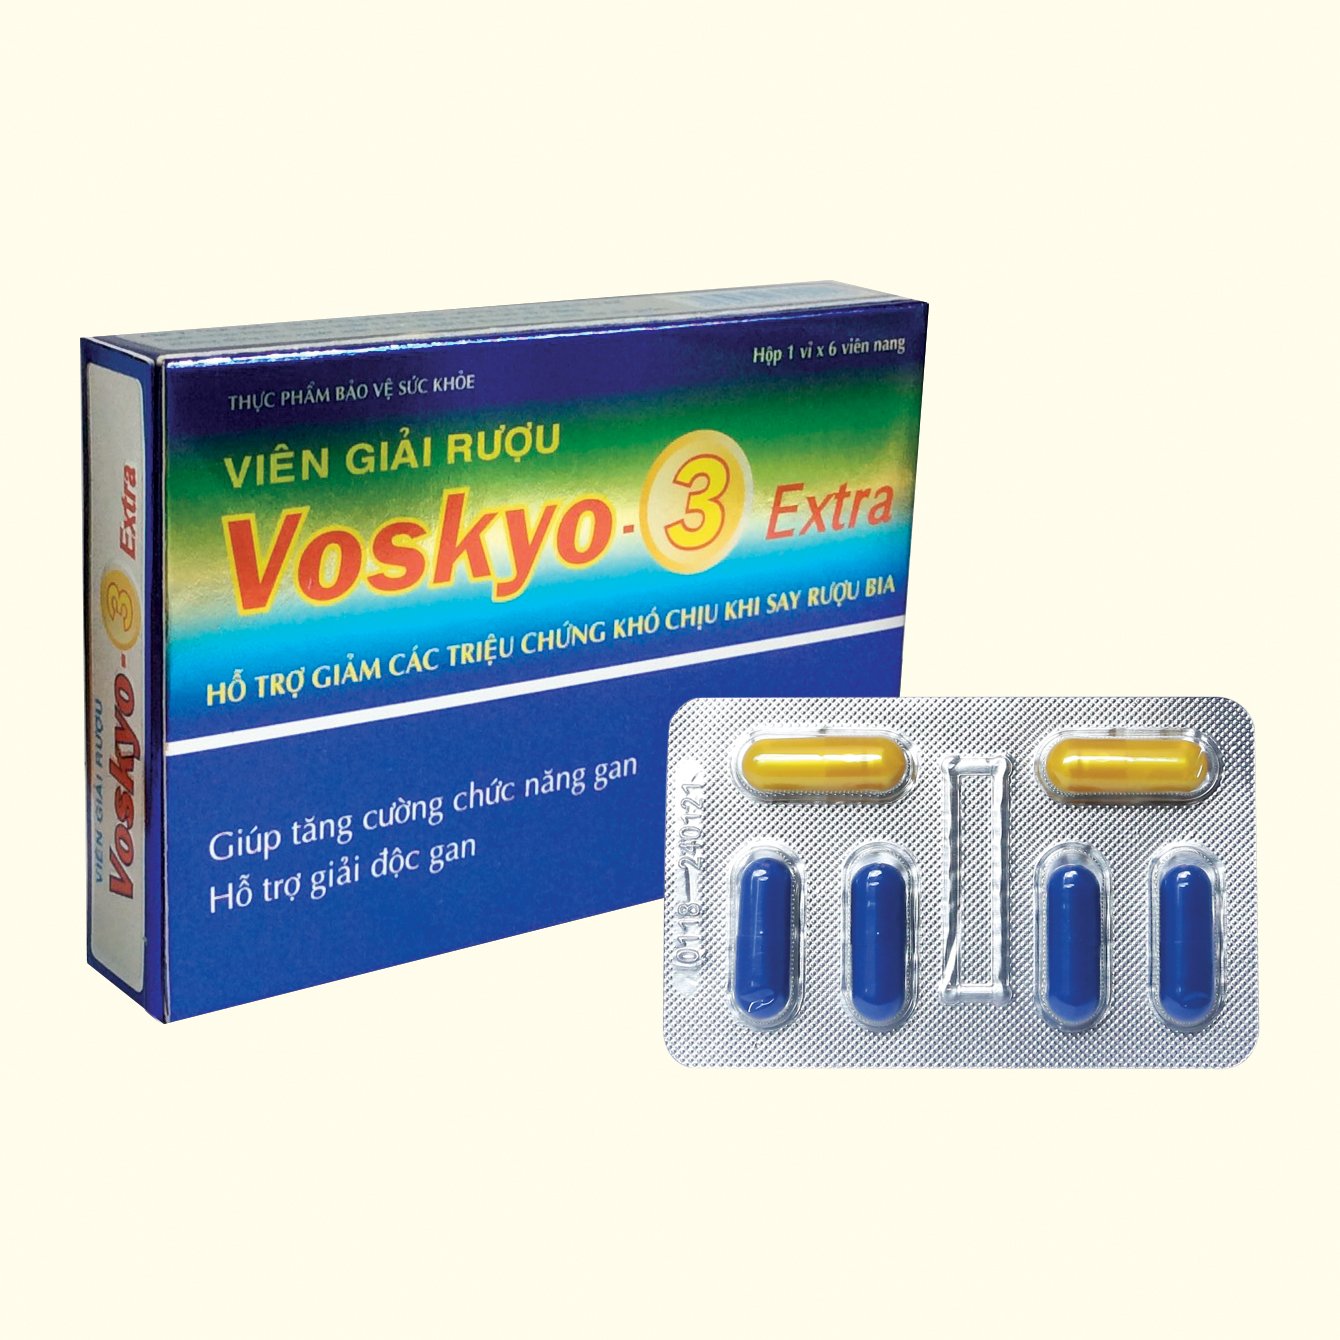 TPBVSK Viên giải rượu VOSKYO - 3 EXTRA